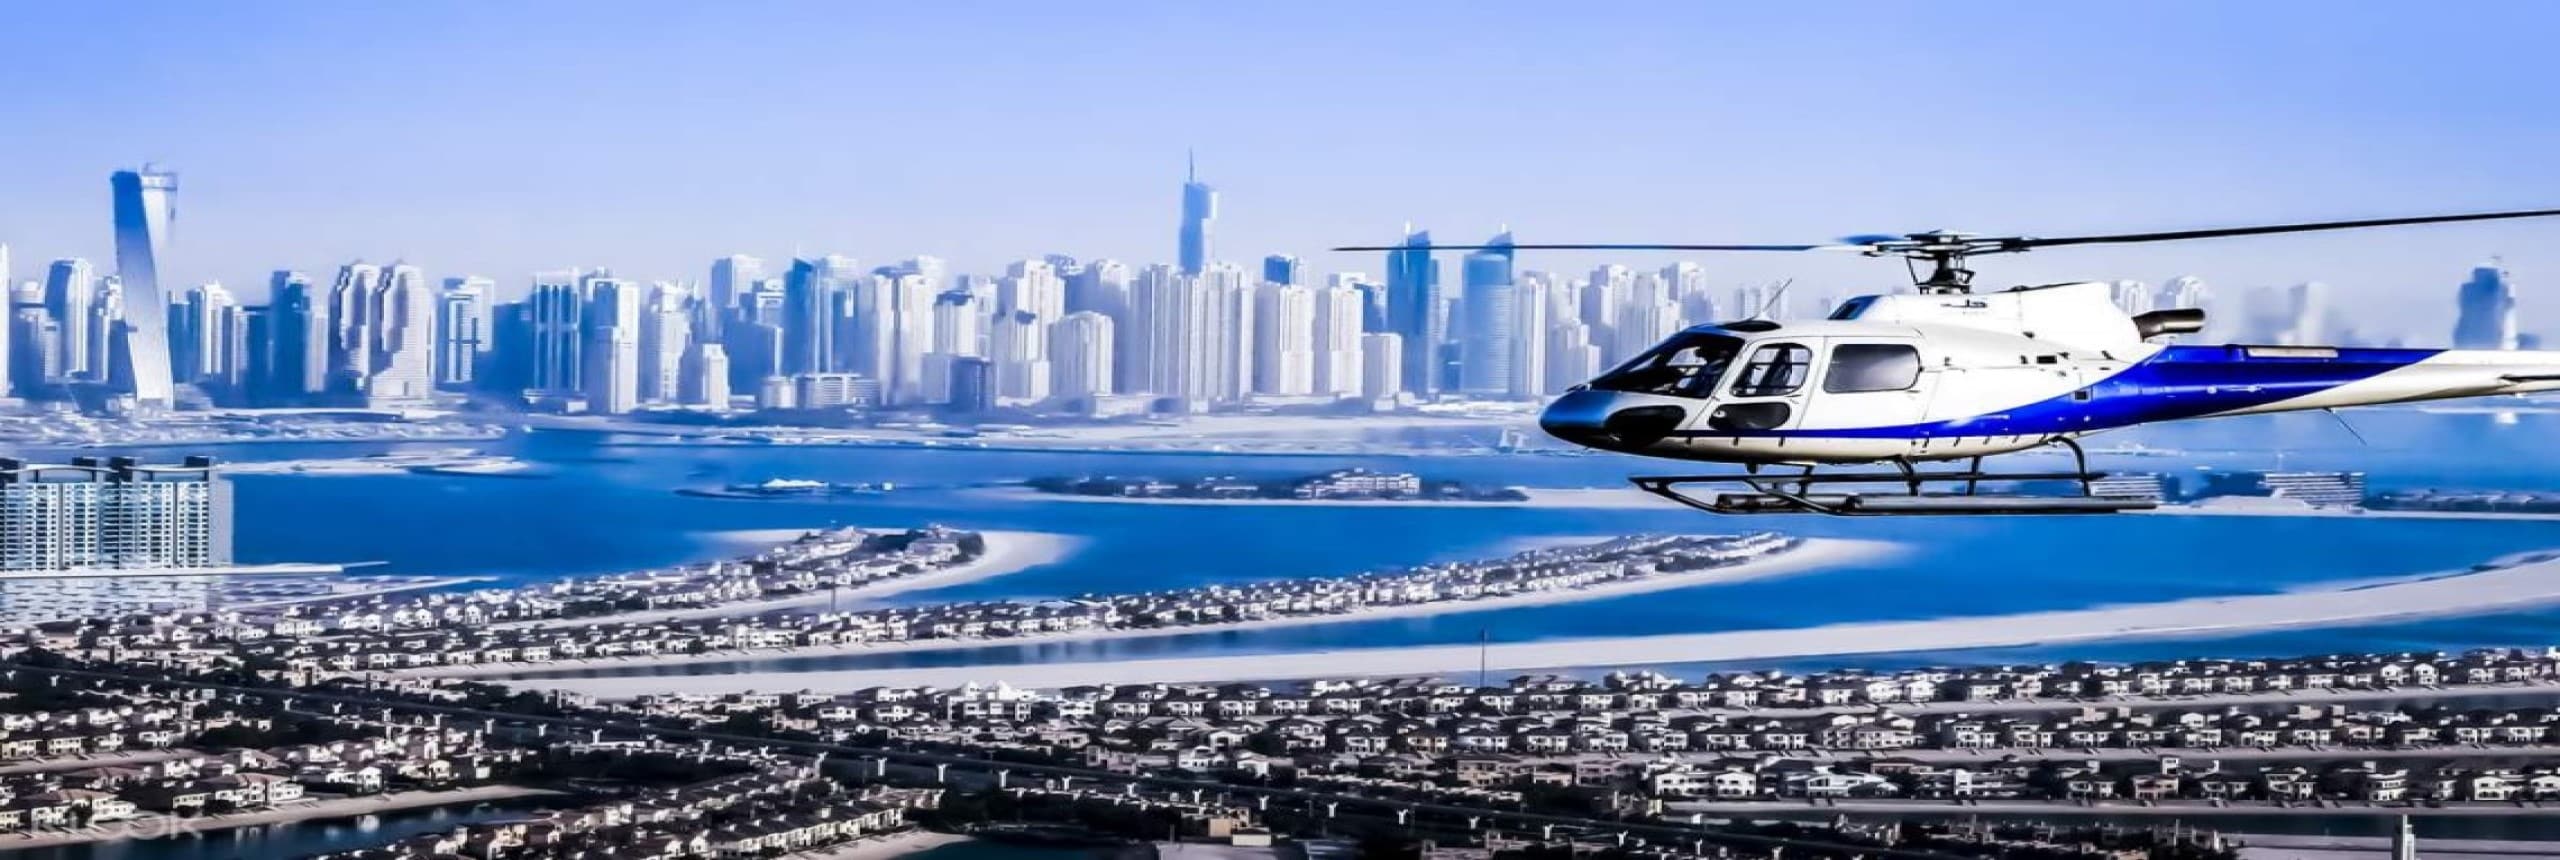 تور هلیکوپتر دبی - تور خصوصی از آتلانتیس